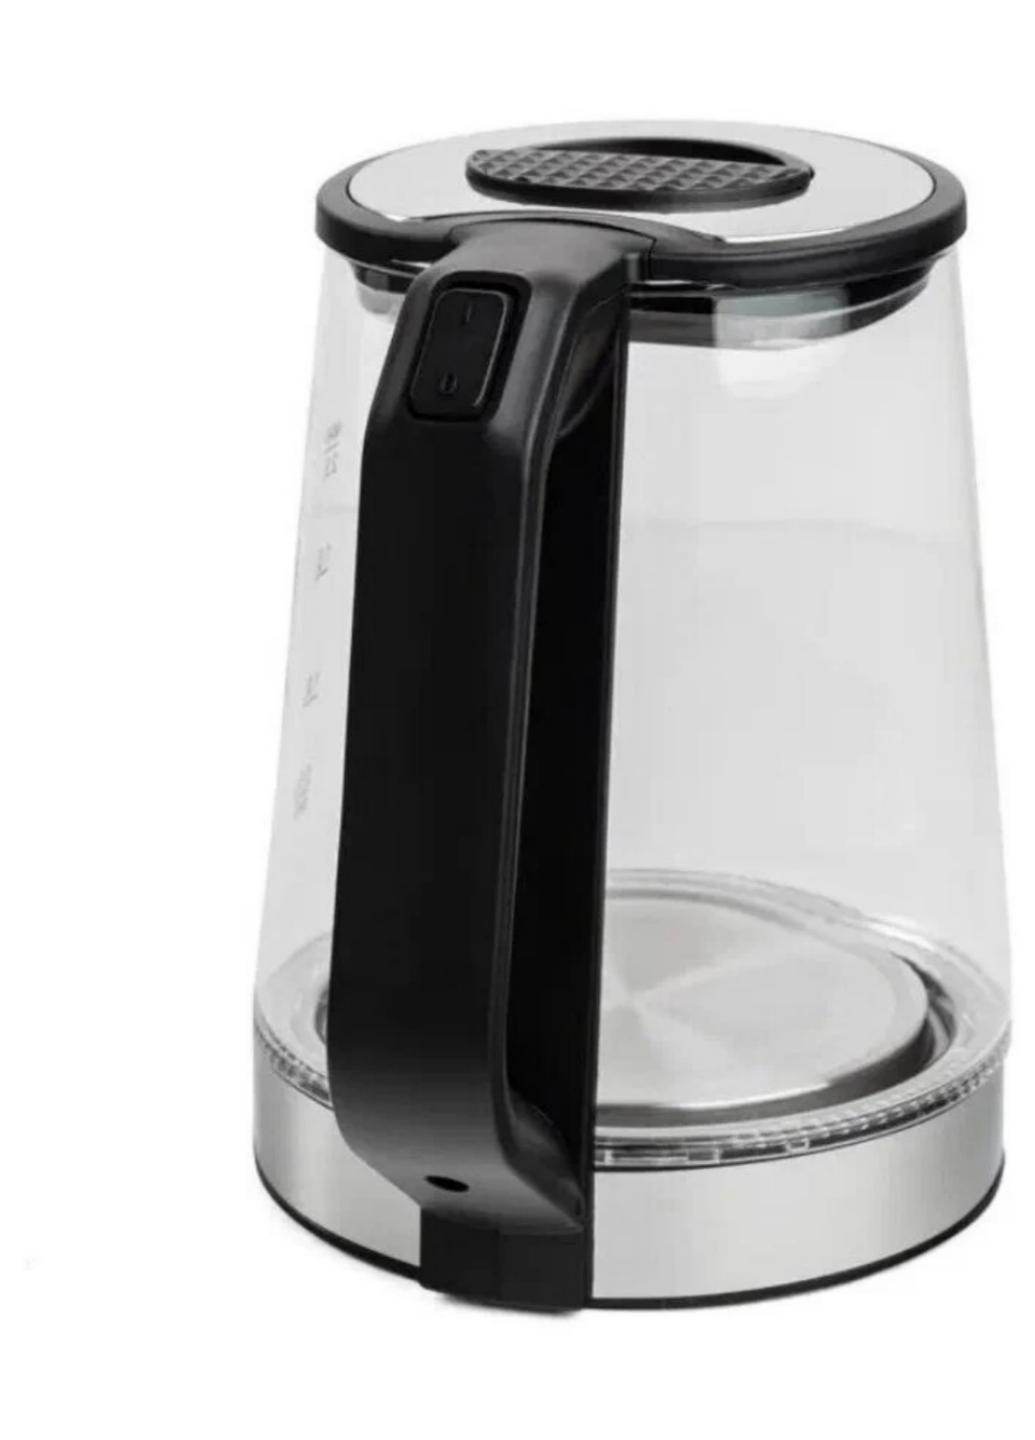 Чайник электрический из прочного жаропрочного стекла 1.8л 1800W Besser Glass 10367 чёрный